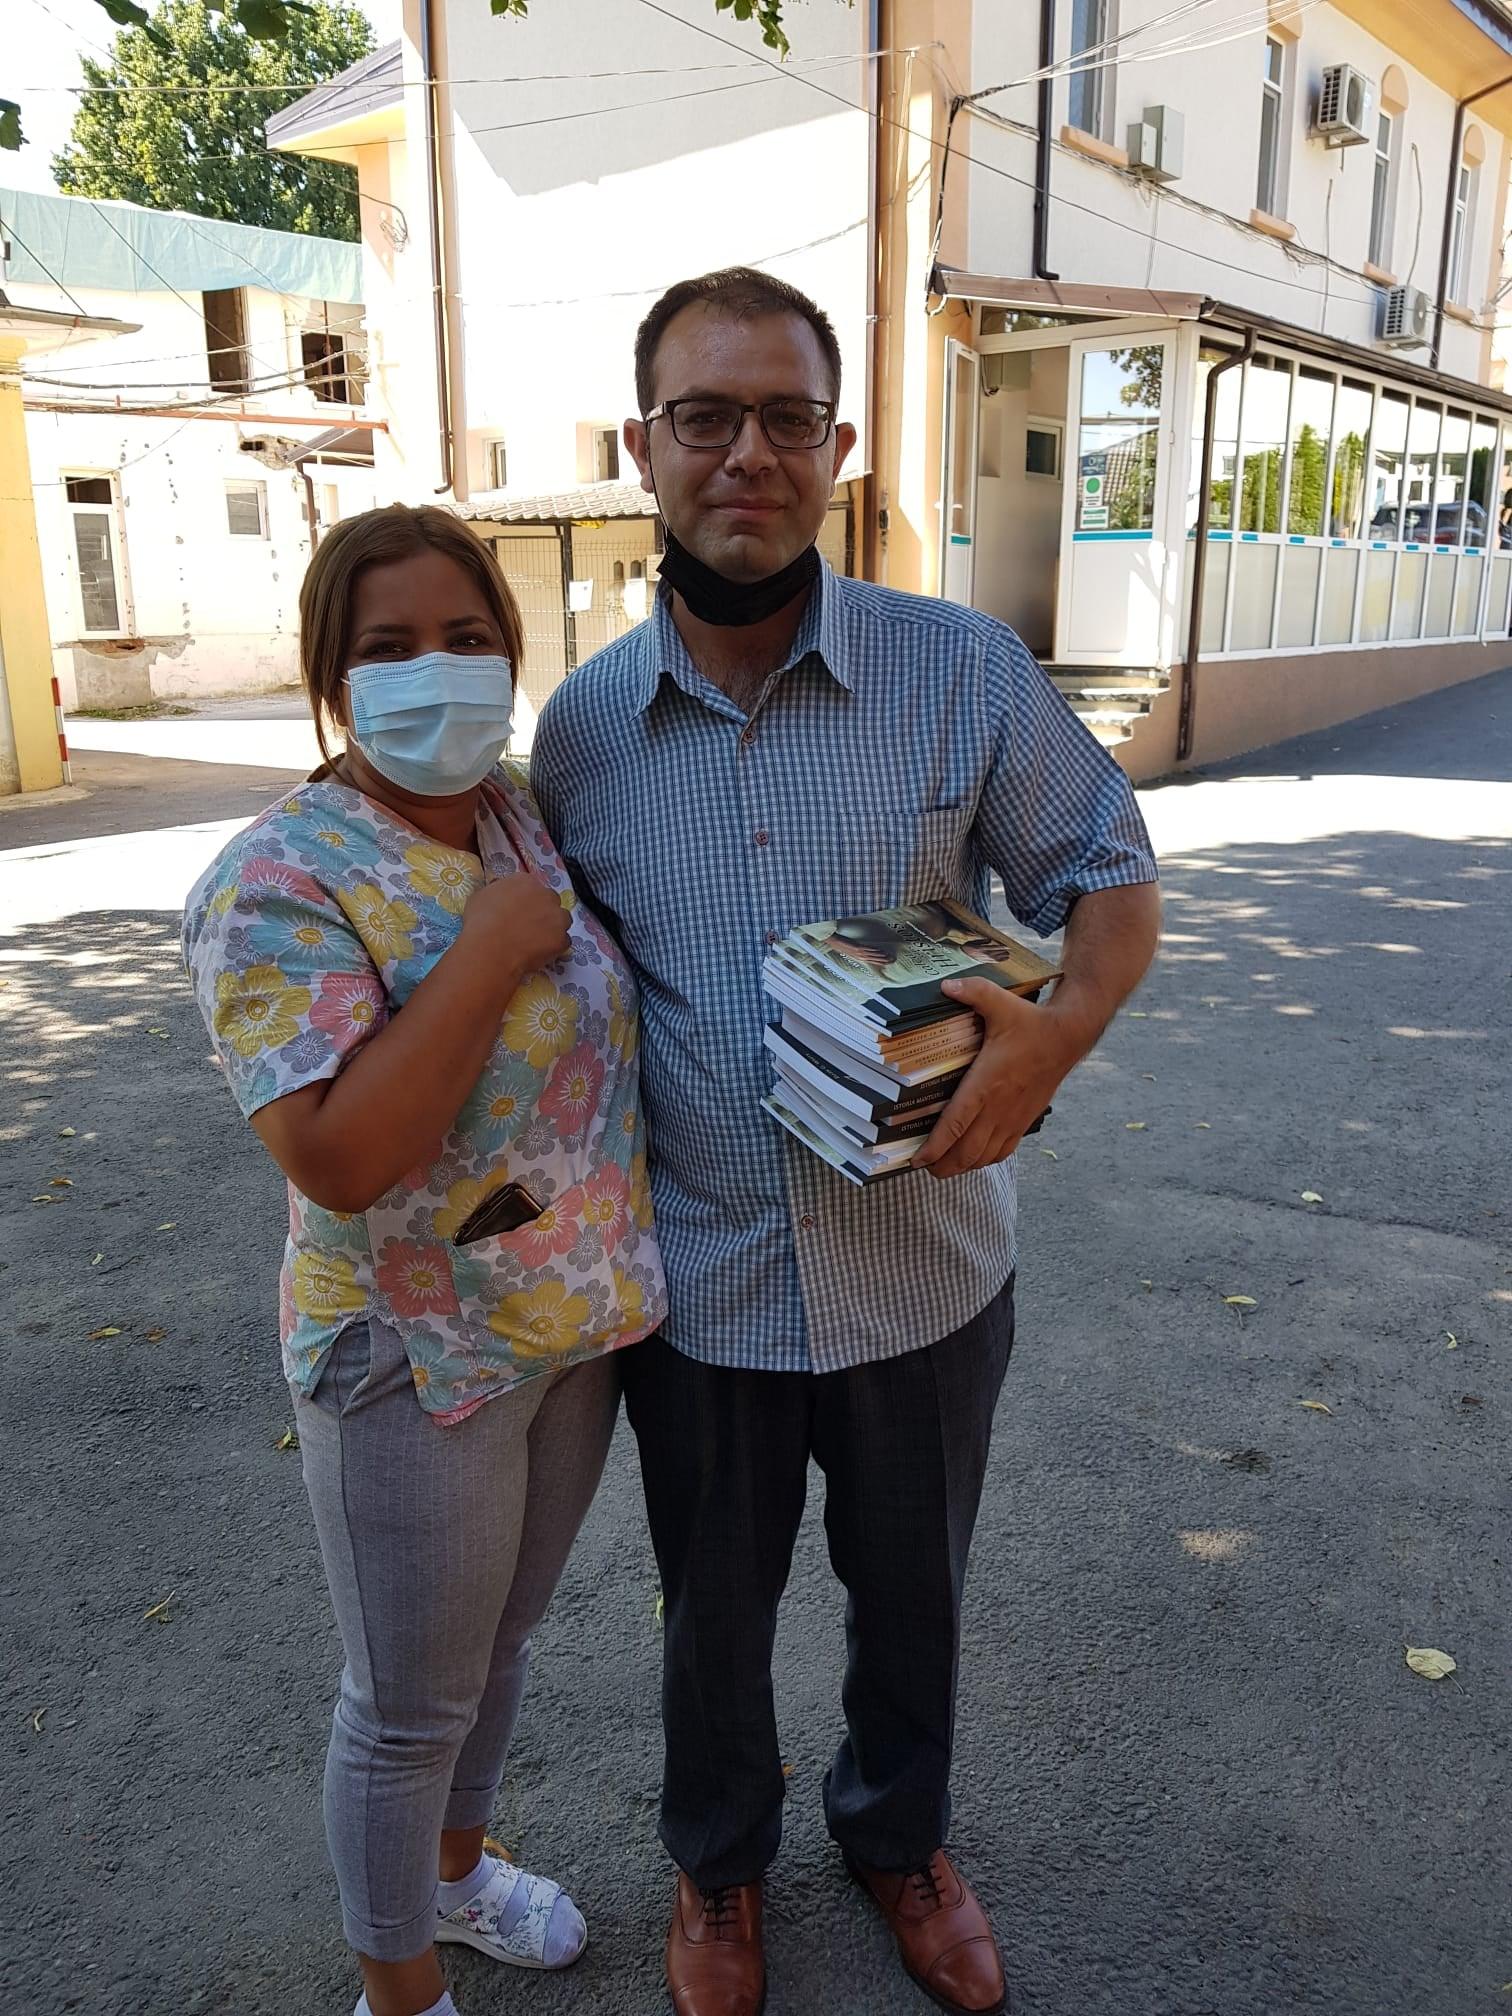 Un fost pacient infectat cu Covid-19, internat la ATI, s-a întors la spitalul din Iași să le mulțumească cadrelor medicale